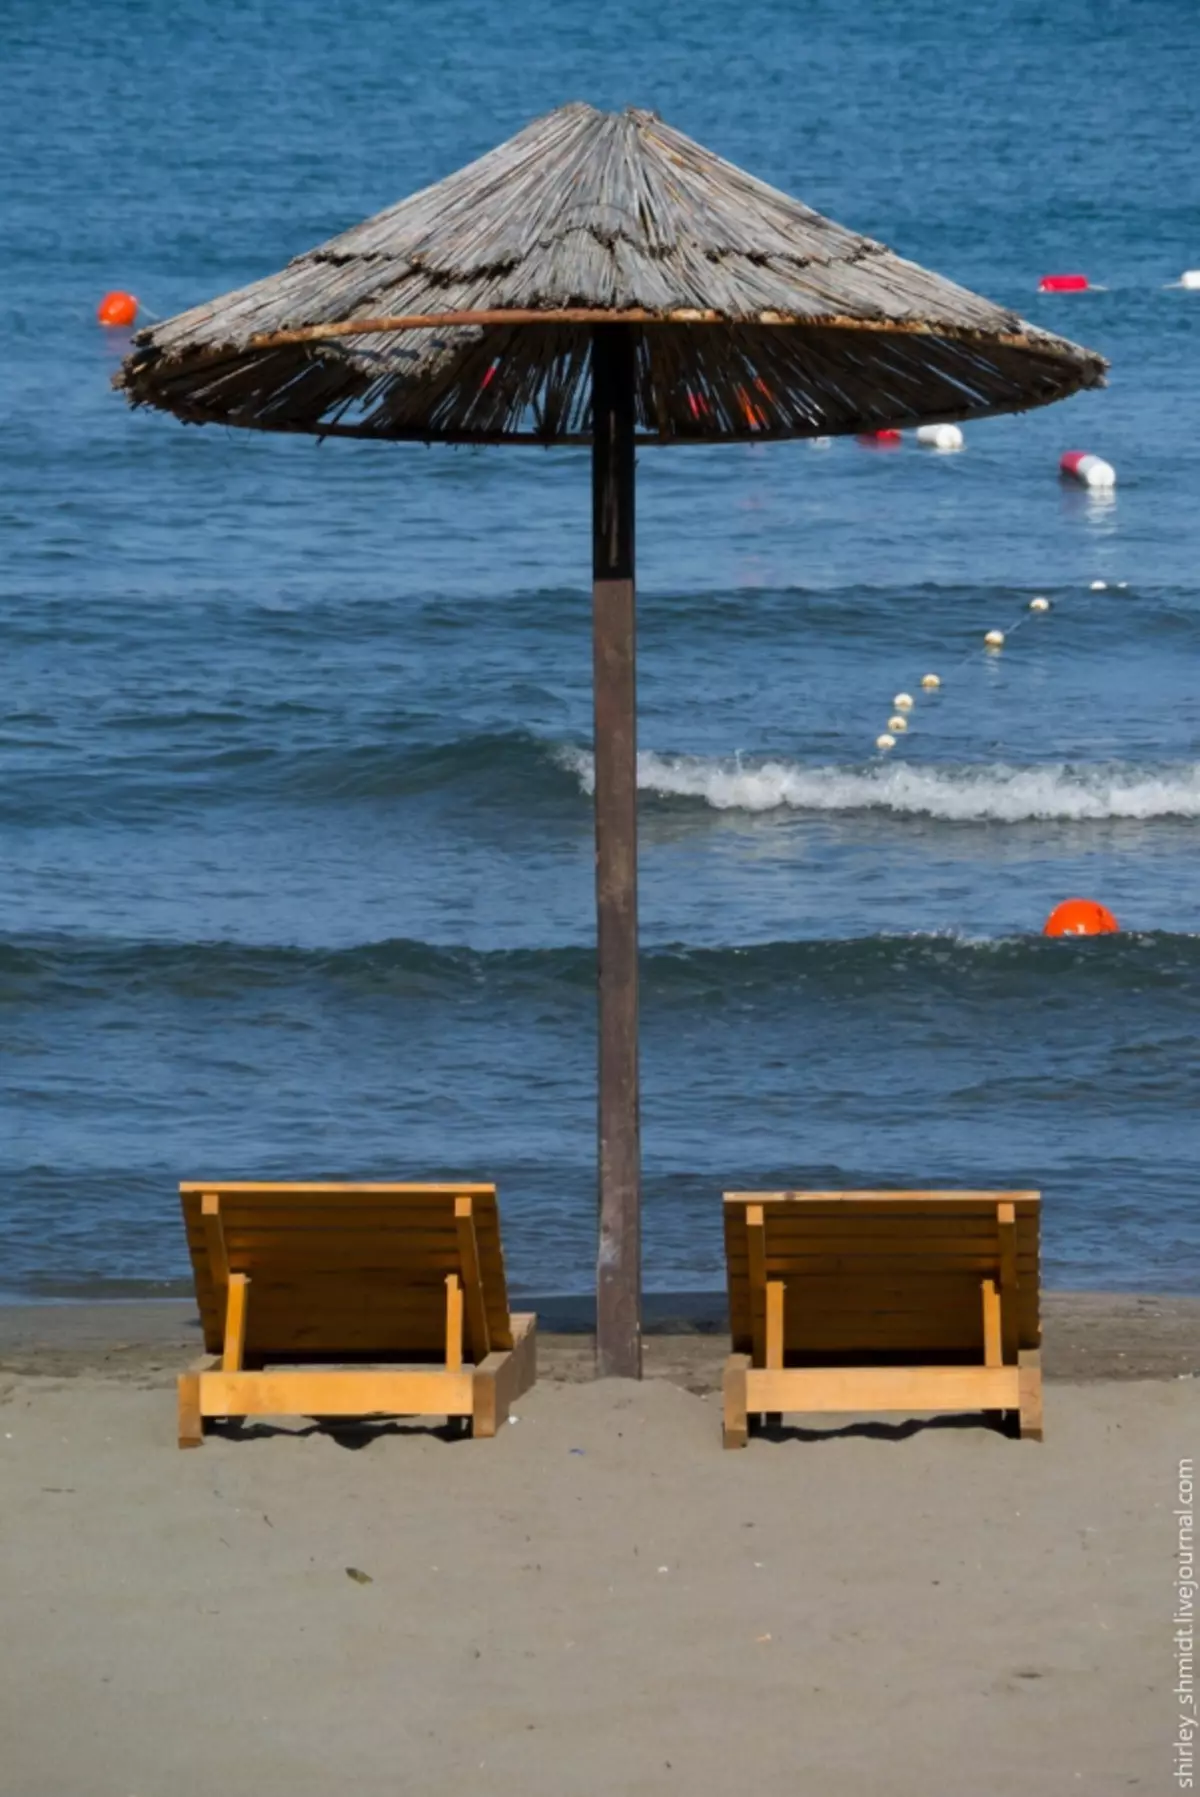 Strân Ubrella (61 foto's): Summer foldje gruttere dyk en hânmodellen út 'e sinne foar it strân, lykas se wurde neamd 15244_40